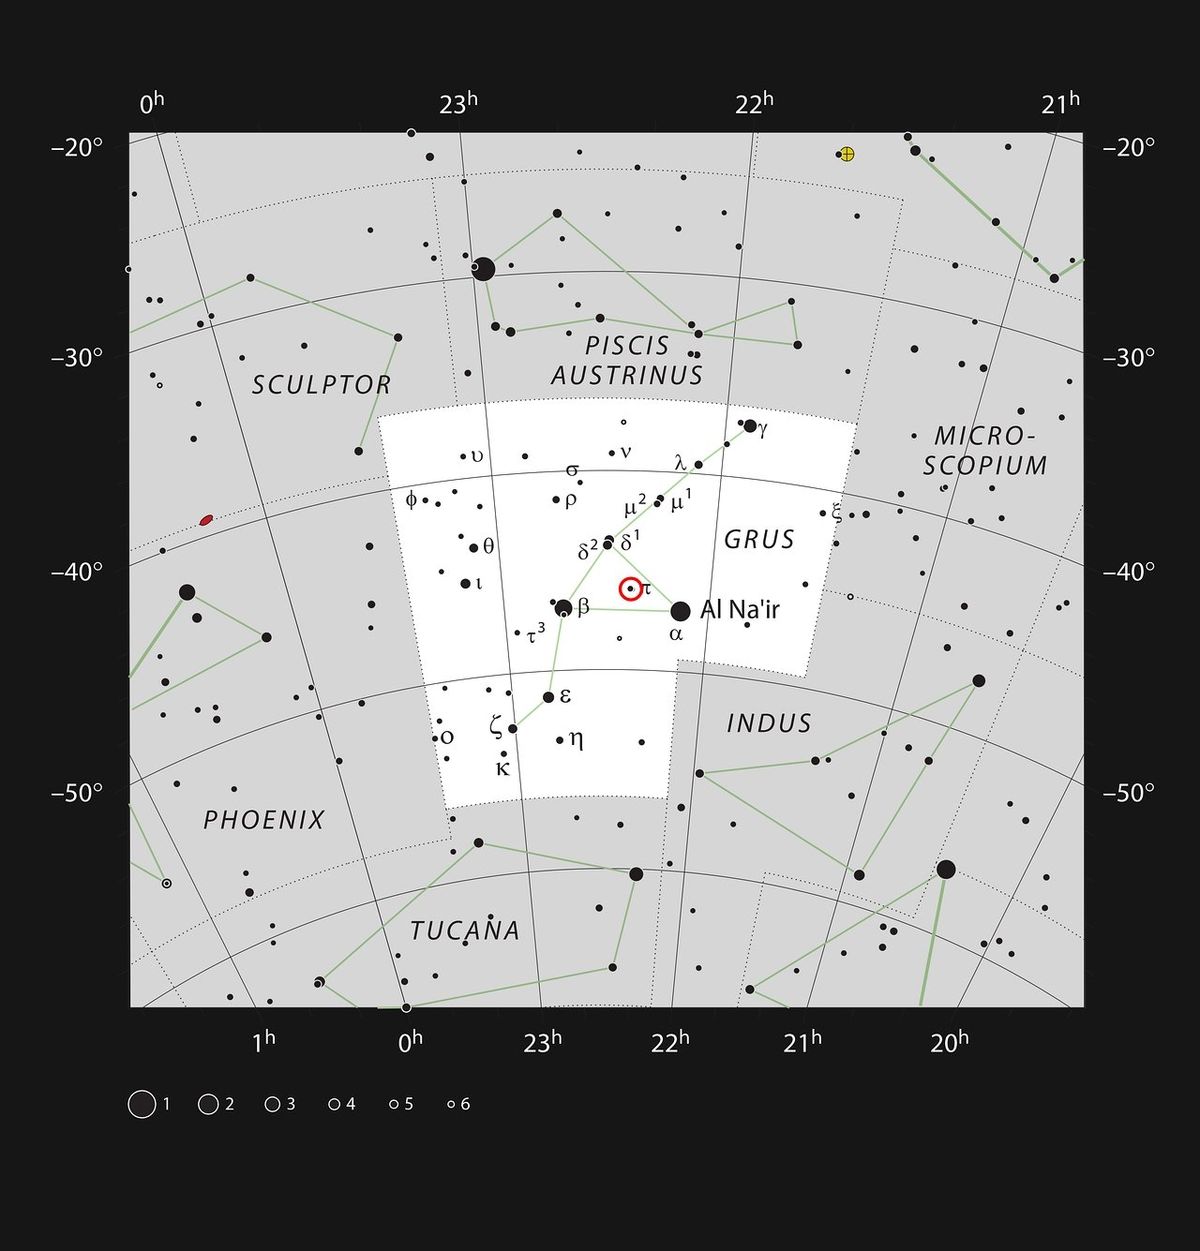 Mapka zachycuje jižní souhvězdí Jeřáb (Grus). Vyznačeny jsou všechny hvězdy viditelné na tmavé obloze pouhým okem. Červeným kroužkem je vyznačena poloha rudého obra π1 Gruis, který s hvězdou π2 Gruis vytváří barevný pár pozorovatelný i malými dalekohledy.